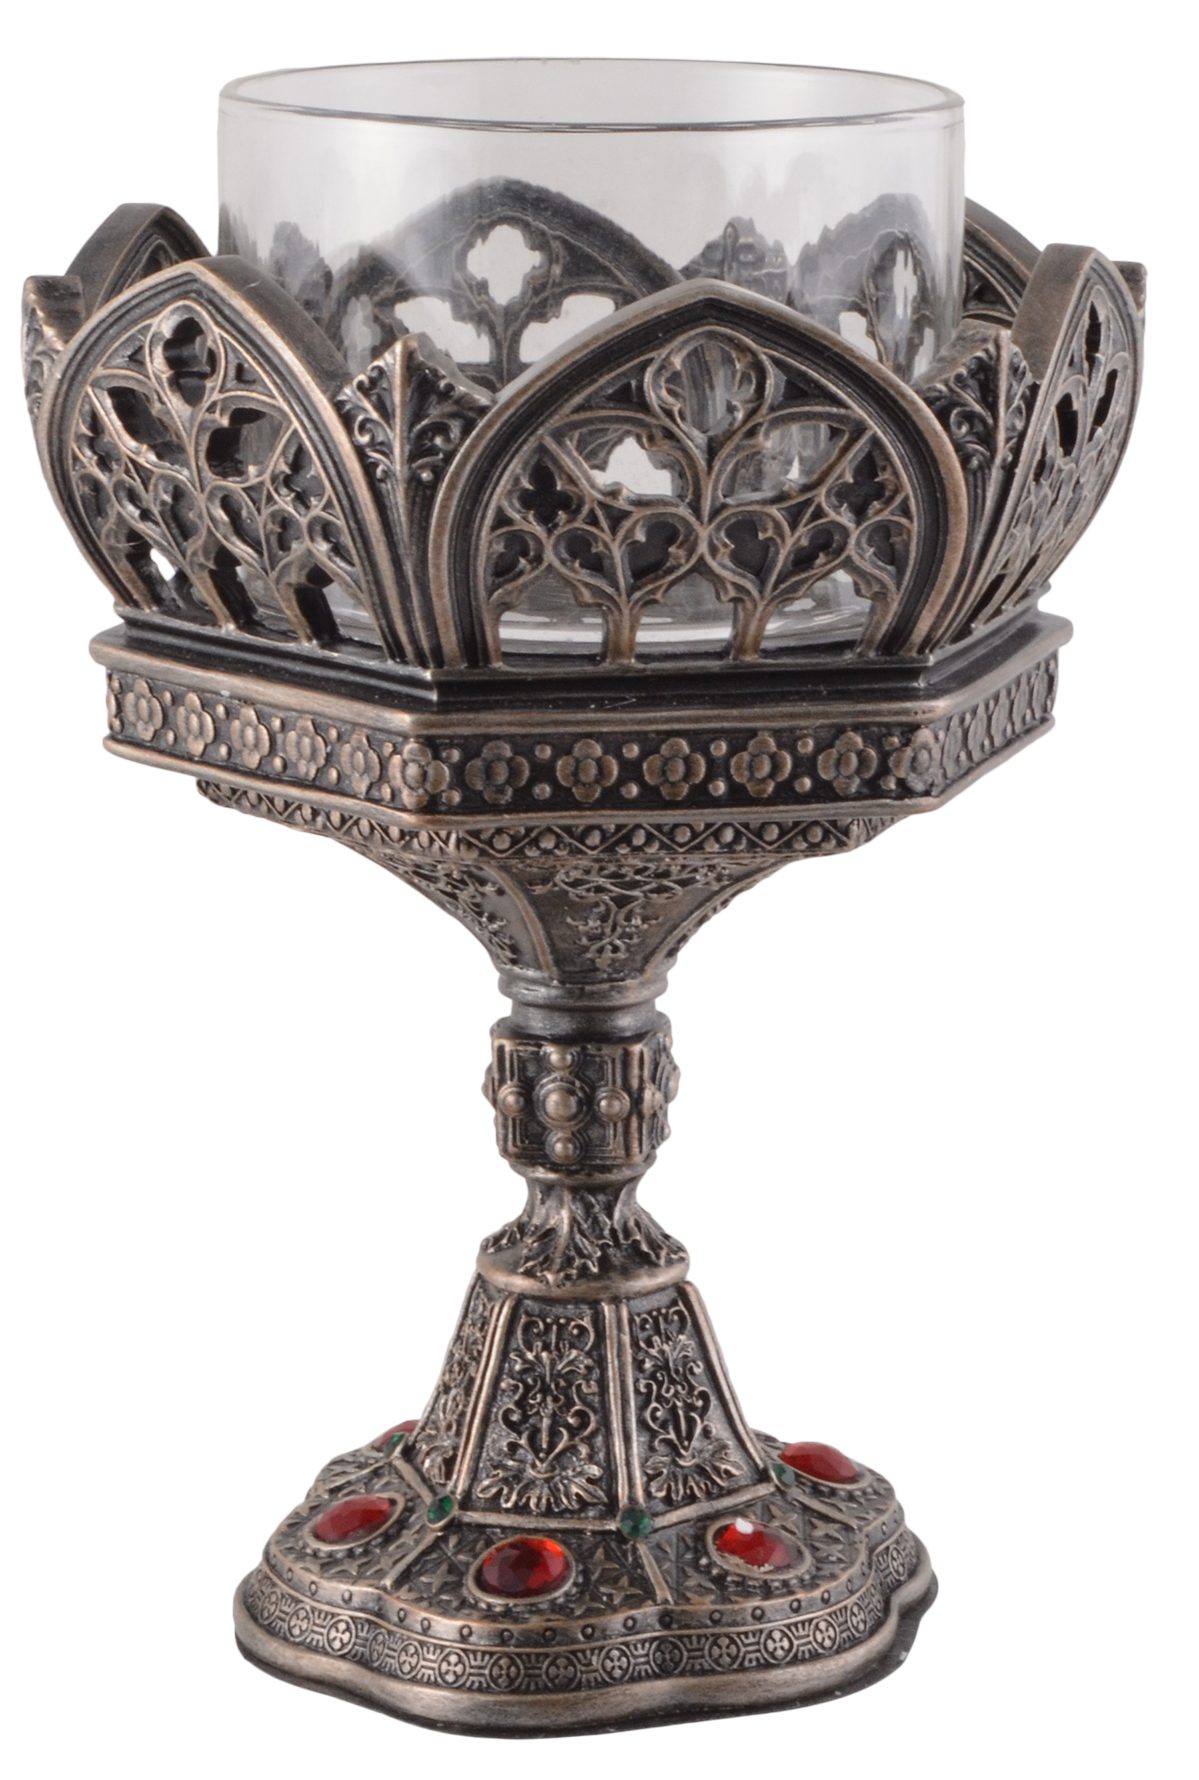 Gmbh wurden von Kerzenständer versilbert, by Veronese, in Details direct - ca. "Kathedrale" LxBxH 11x10x15cm Vogler Kerzenständer Sechseckform Hand